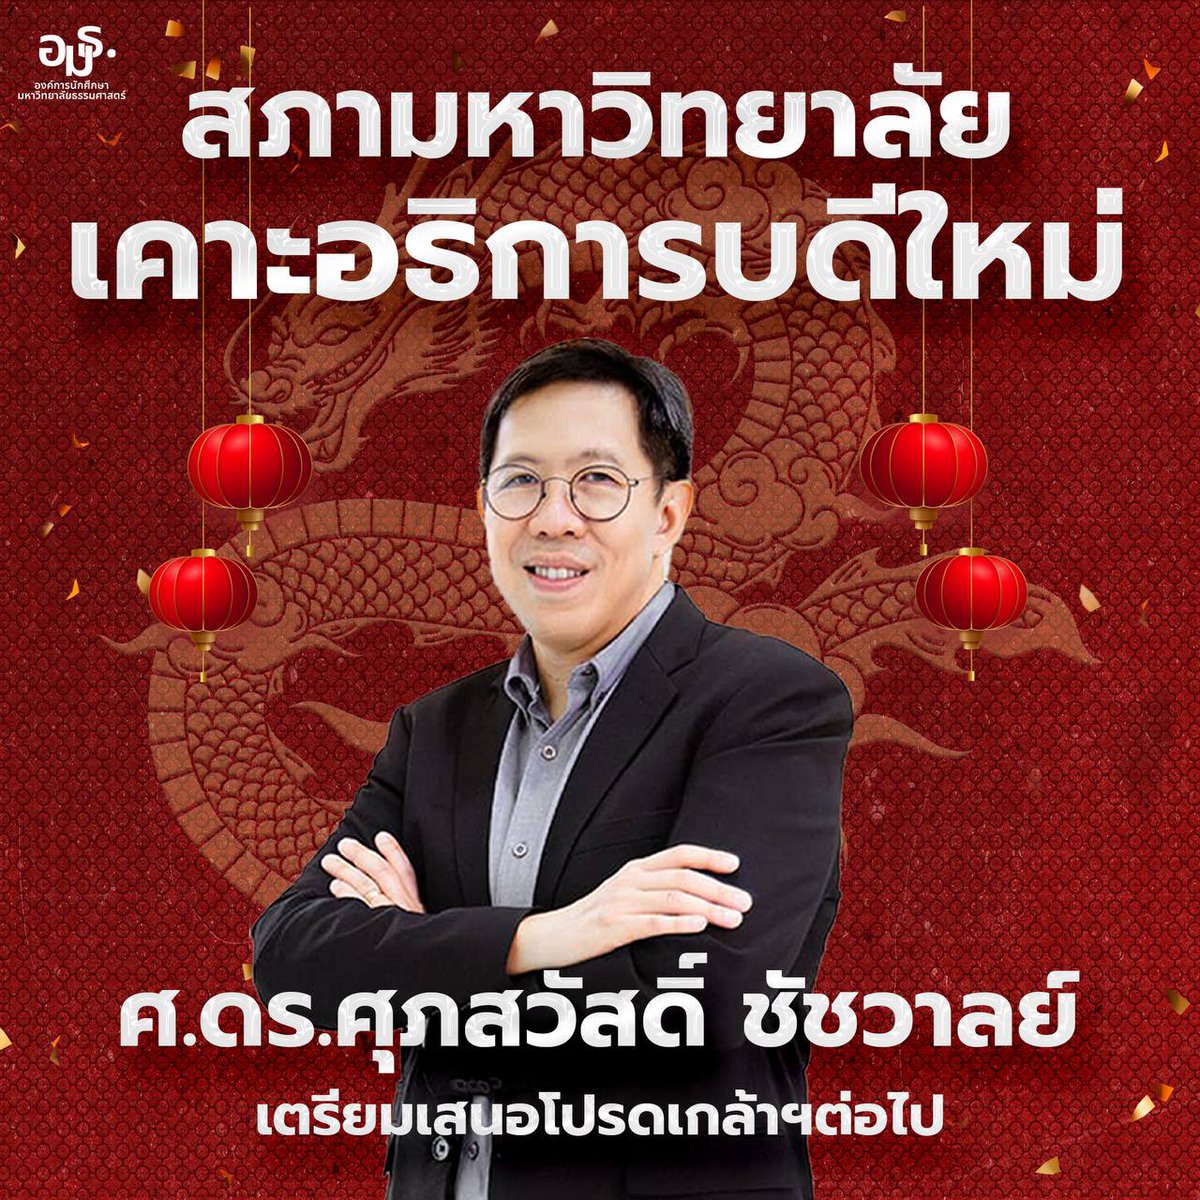 เคาะแล้ว!! ที่ประชุมสภามหาวิทยาลัย มีมติเลือกให้ศ.ดร.ศุภสวัสดิ์ ชัชวาลย์ เป็นอธิการบดีคนใหม่ 

#อธิการบดี #การเมืองมธ #มธ #Thammasat